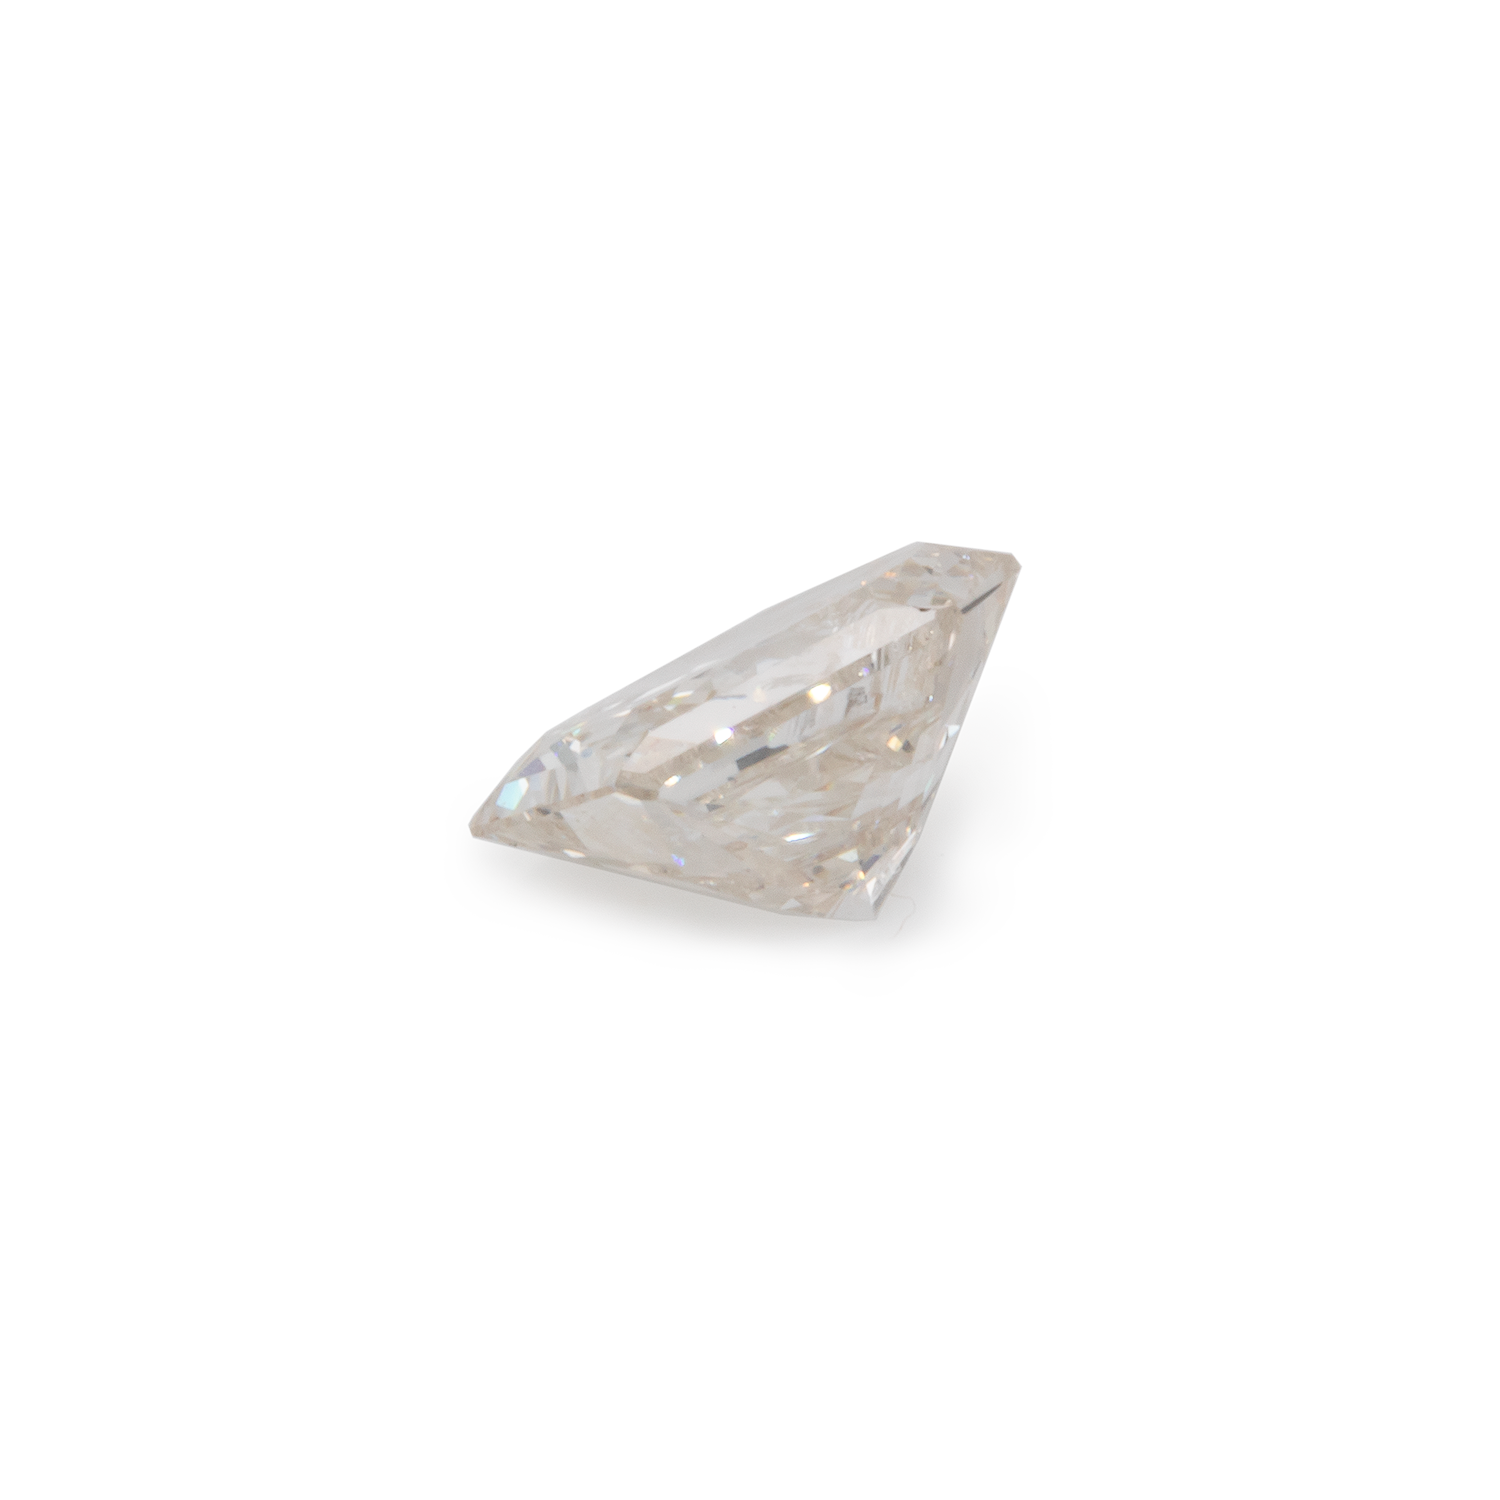 Diamant - leicht getönt weiß, PQ1, fantasie, 5,4x3,9 mm, 0,48 cts, Nr. D12001